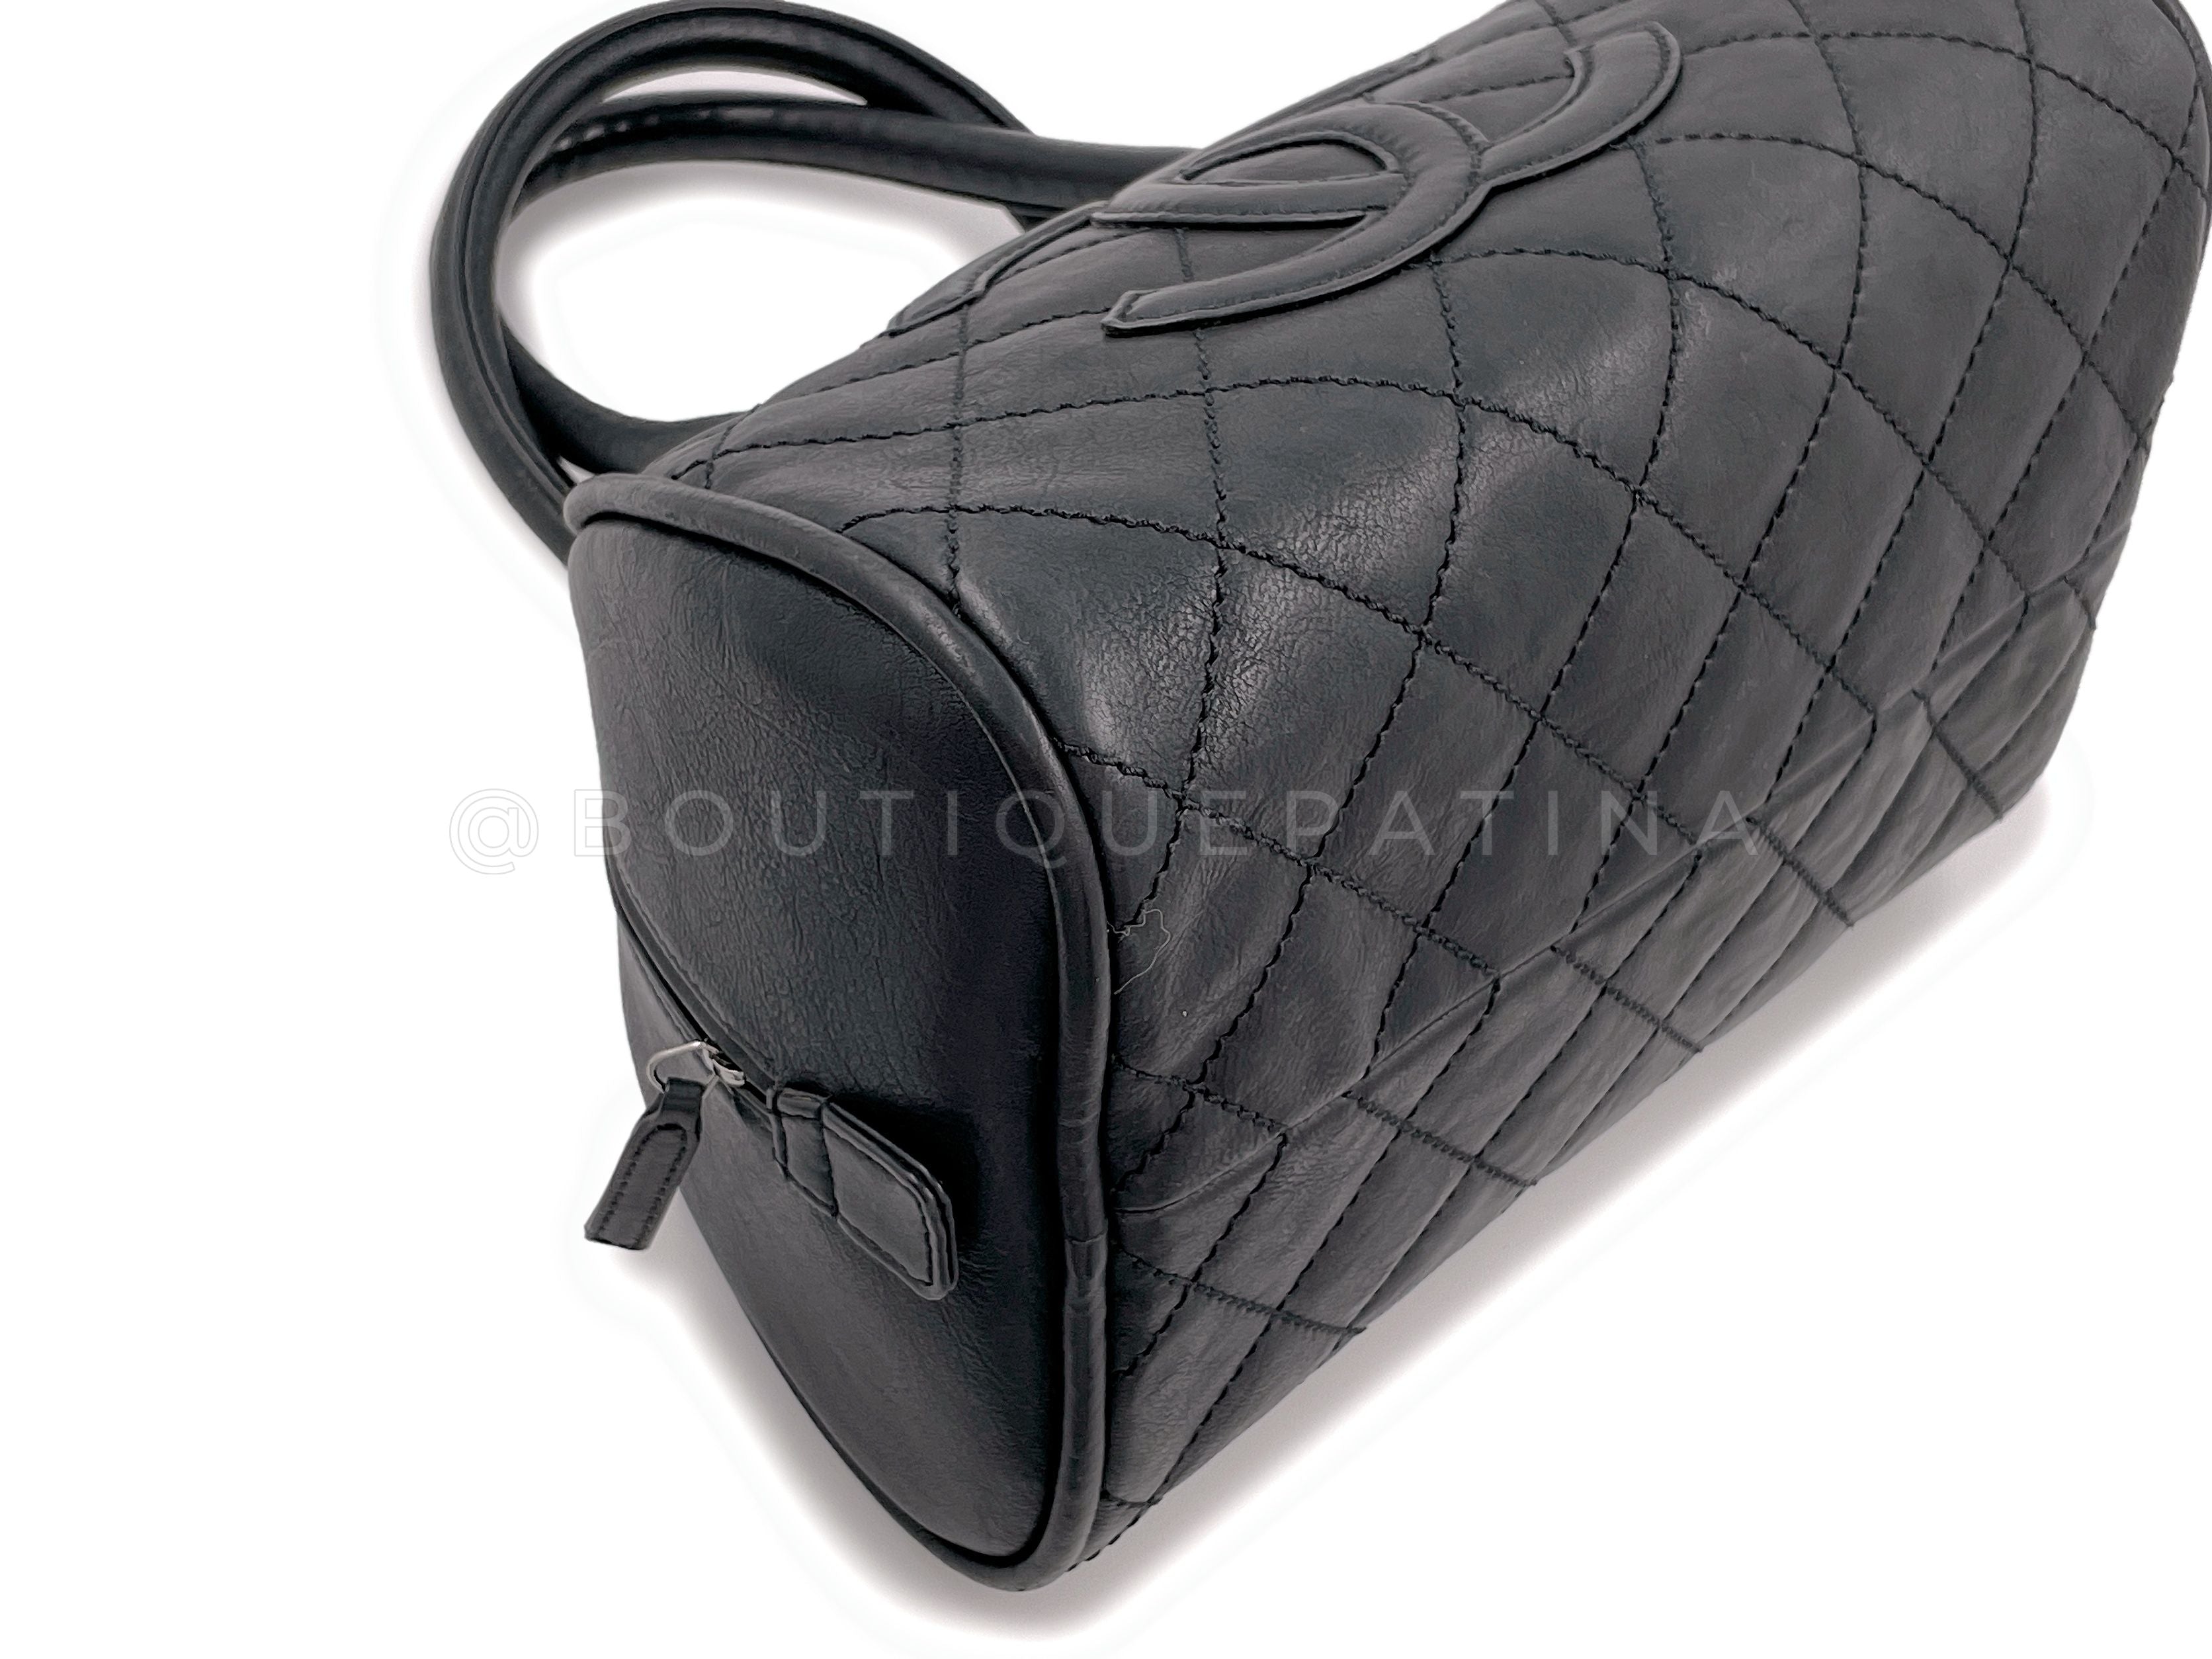 Rare Chanel Vintage Curved Black Timeless Bowler Bag